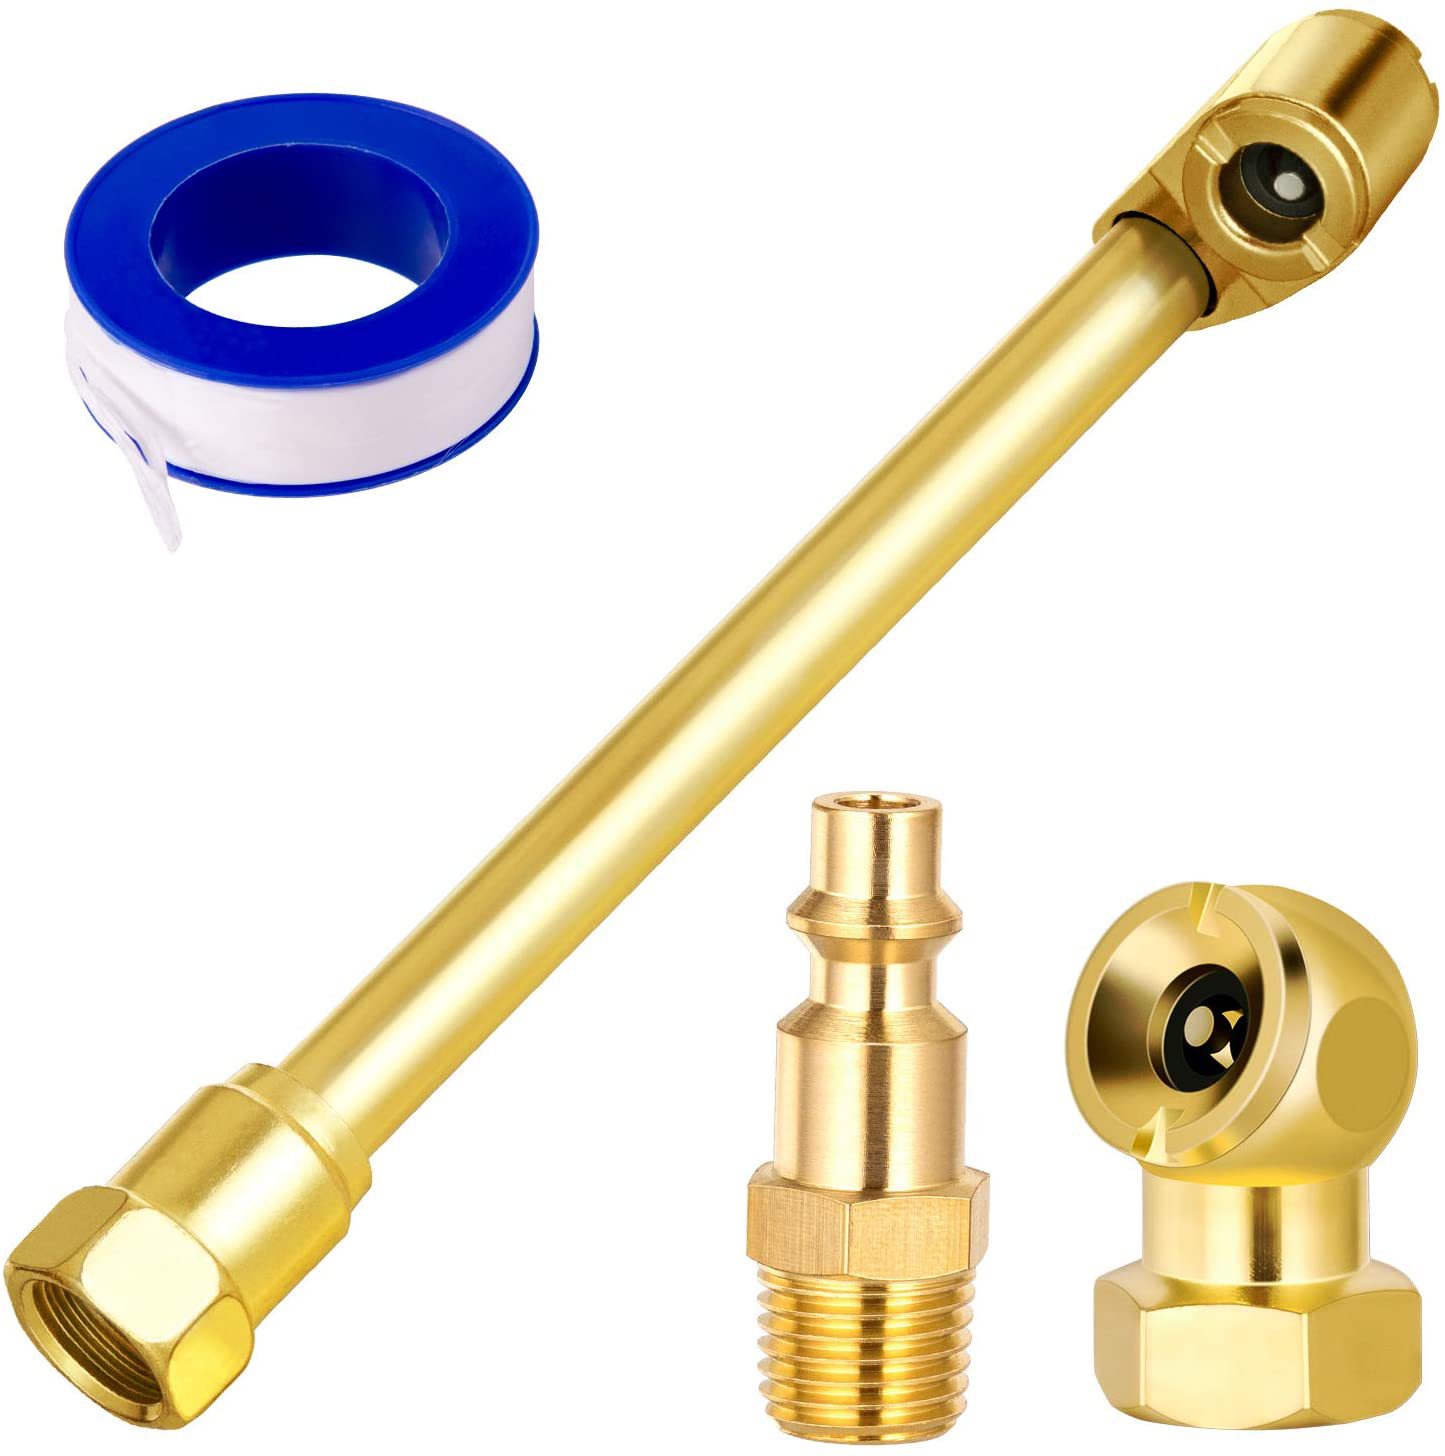  1/4NPT air nozzle, air rod, copper quick connect 4-piece set